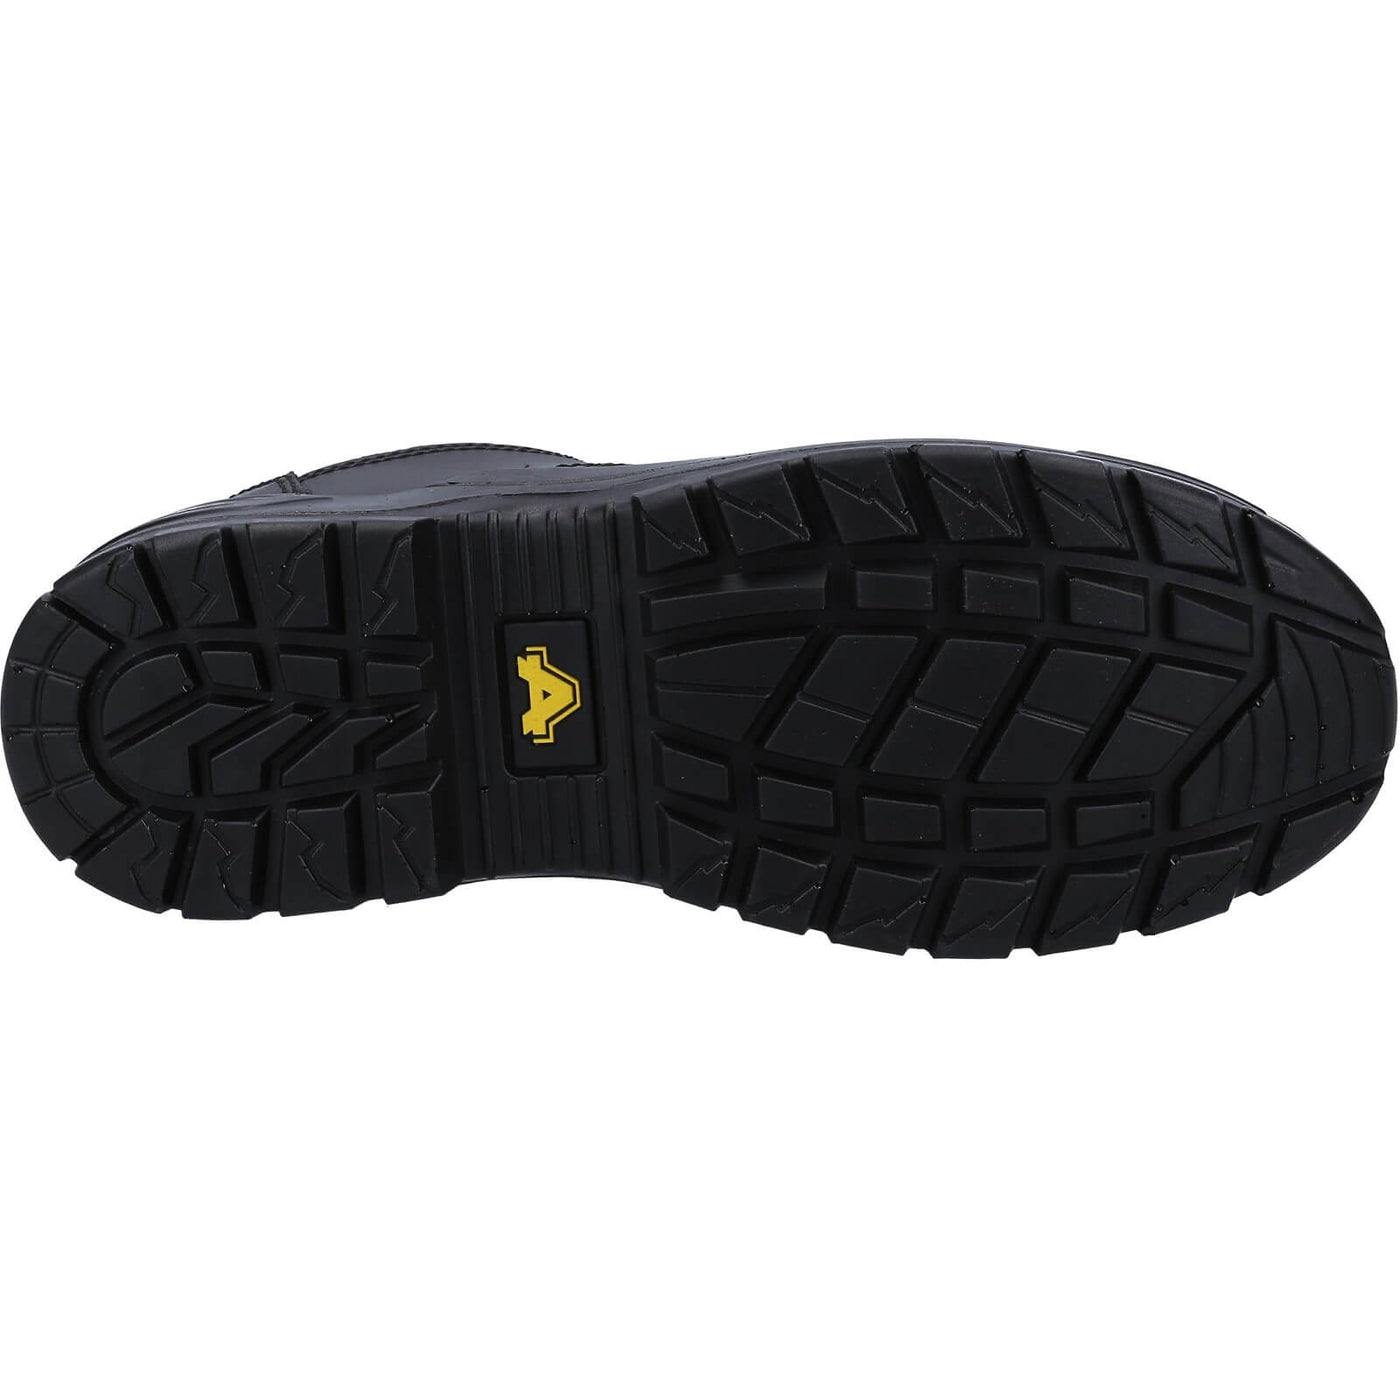 Amblers 66 Safety Shoes Black 3#colour_black